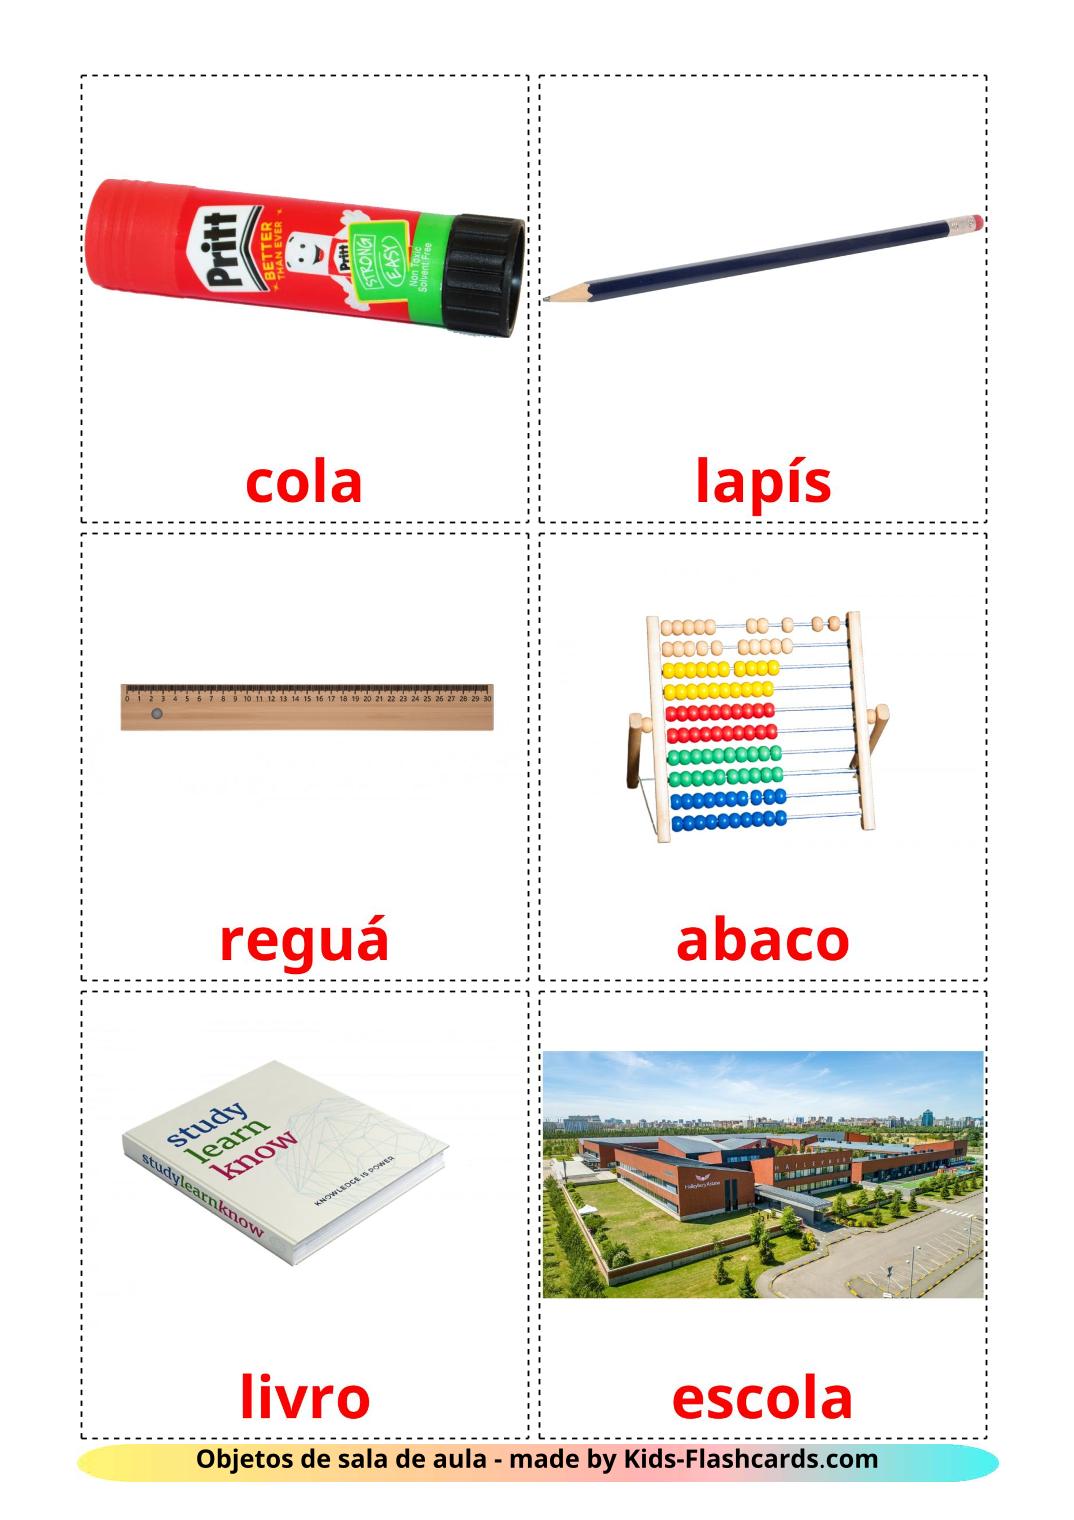 Objetos de sala de aula - 36 Flashcards portuguêses gratuitos para impressão